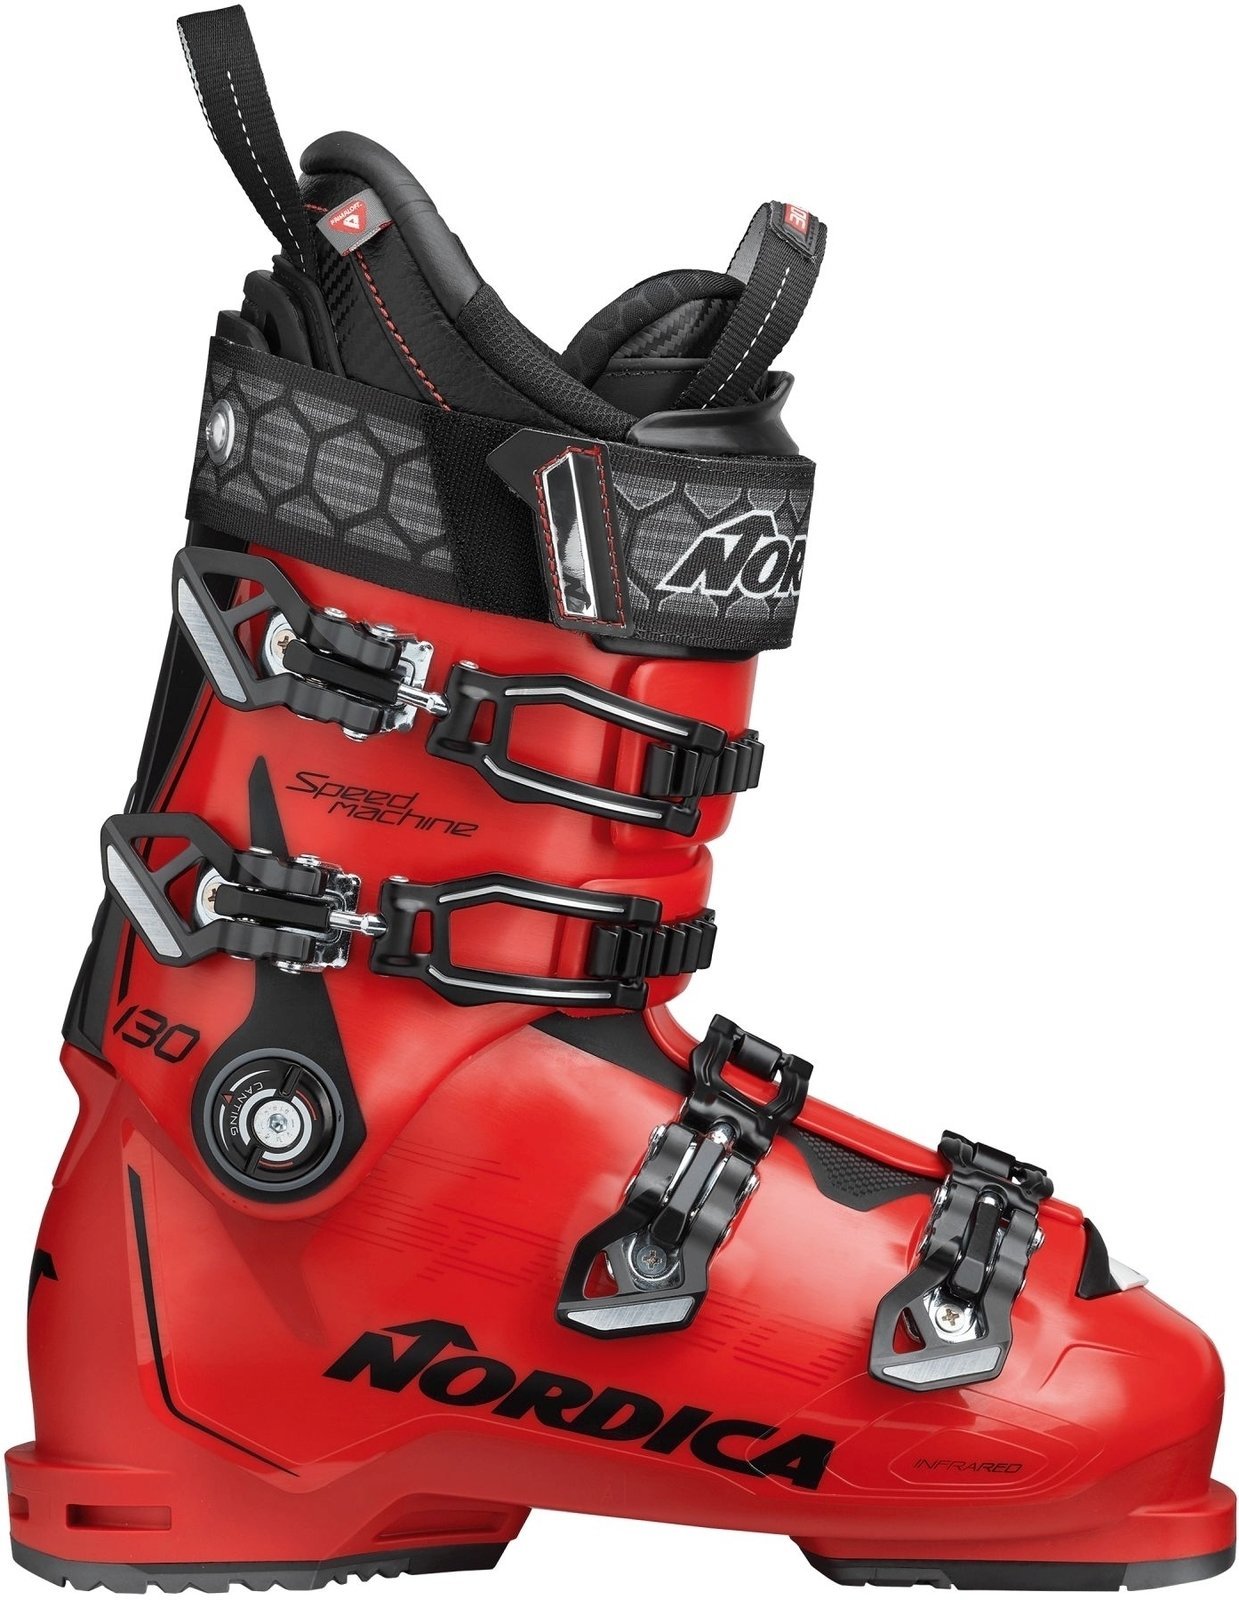 Alpin-Skischuhe Nordica Speedmachine Rot-Schwarz 275 Alpin-Skischuhe